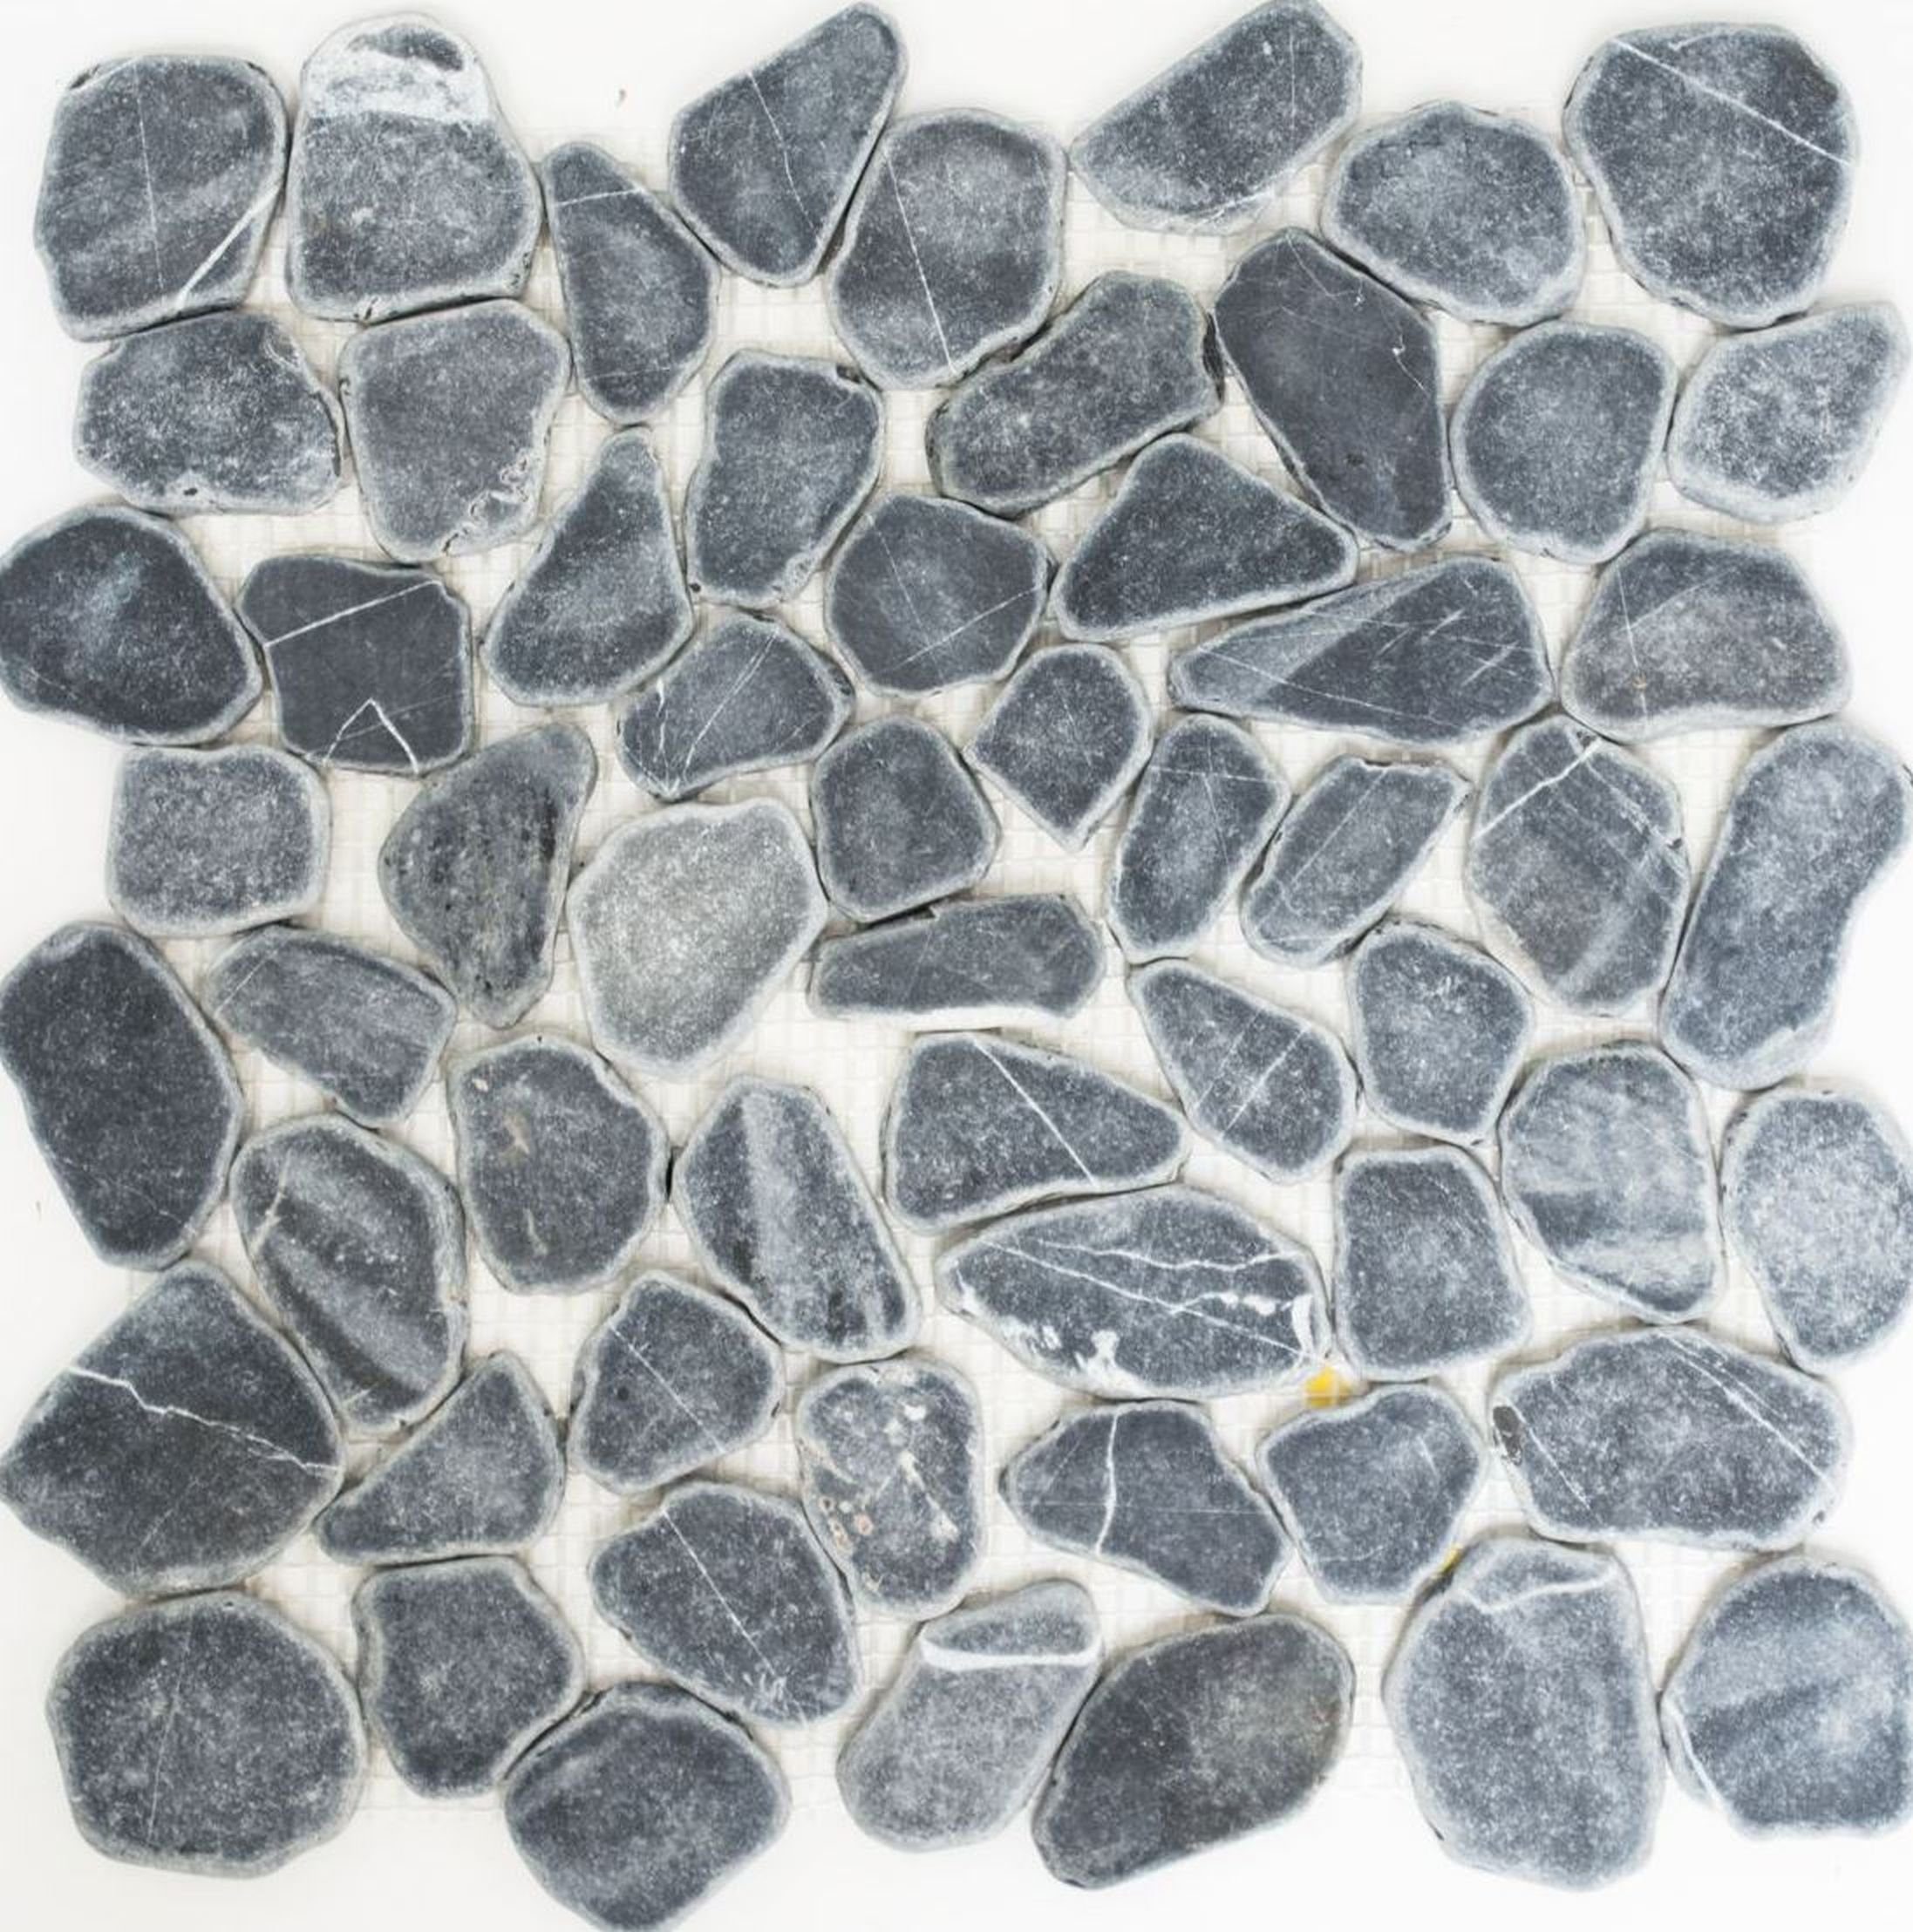 Mosani Mosaikfliesen Flußkiesel geschnitten schwarz anthrazir grau Duschtasse Duschwand | Fliesen